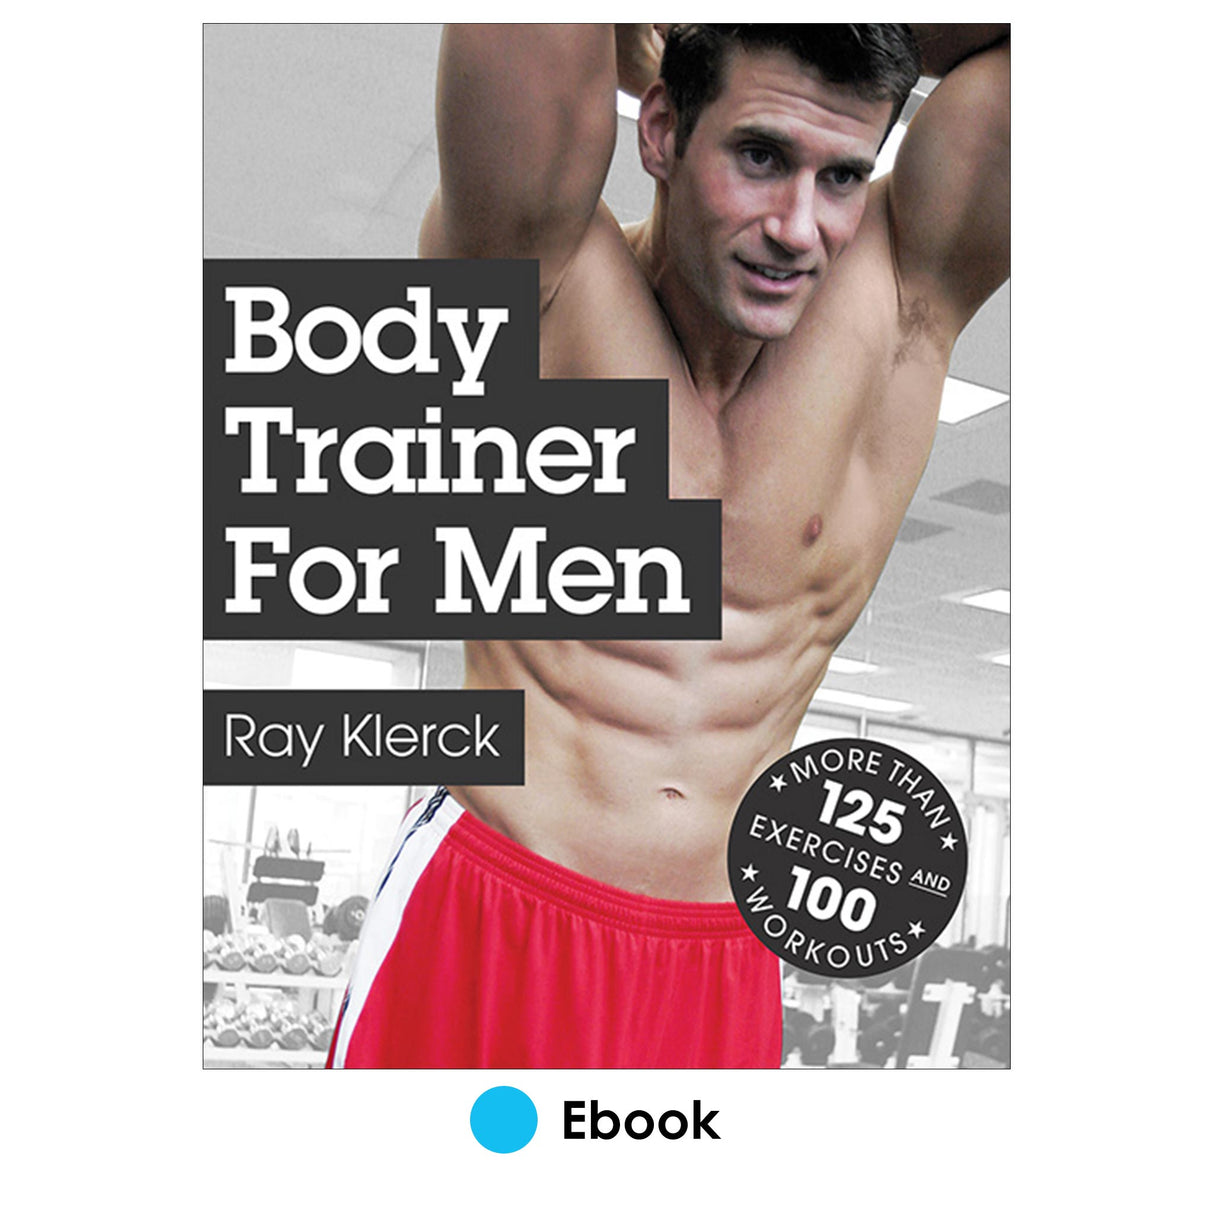 Body Trainer for Men PDF